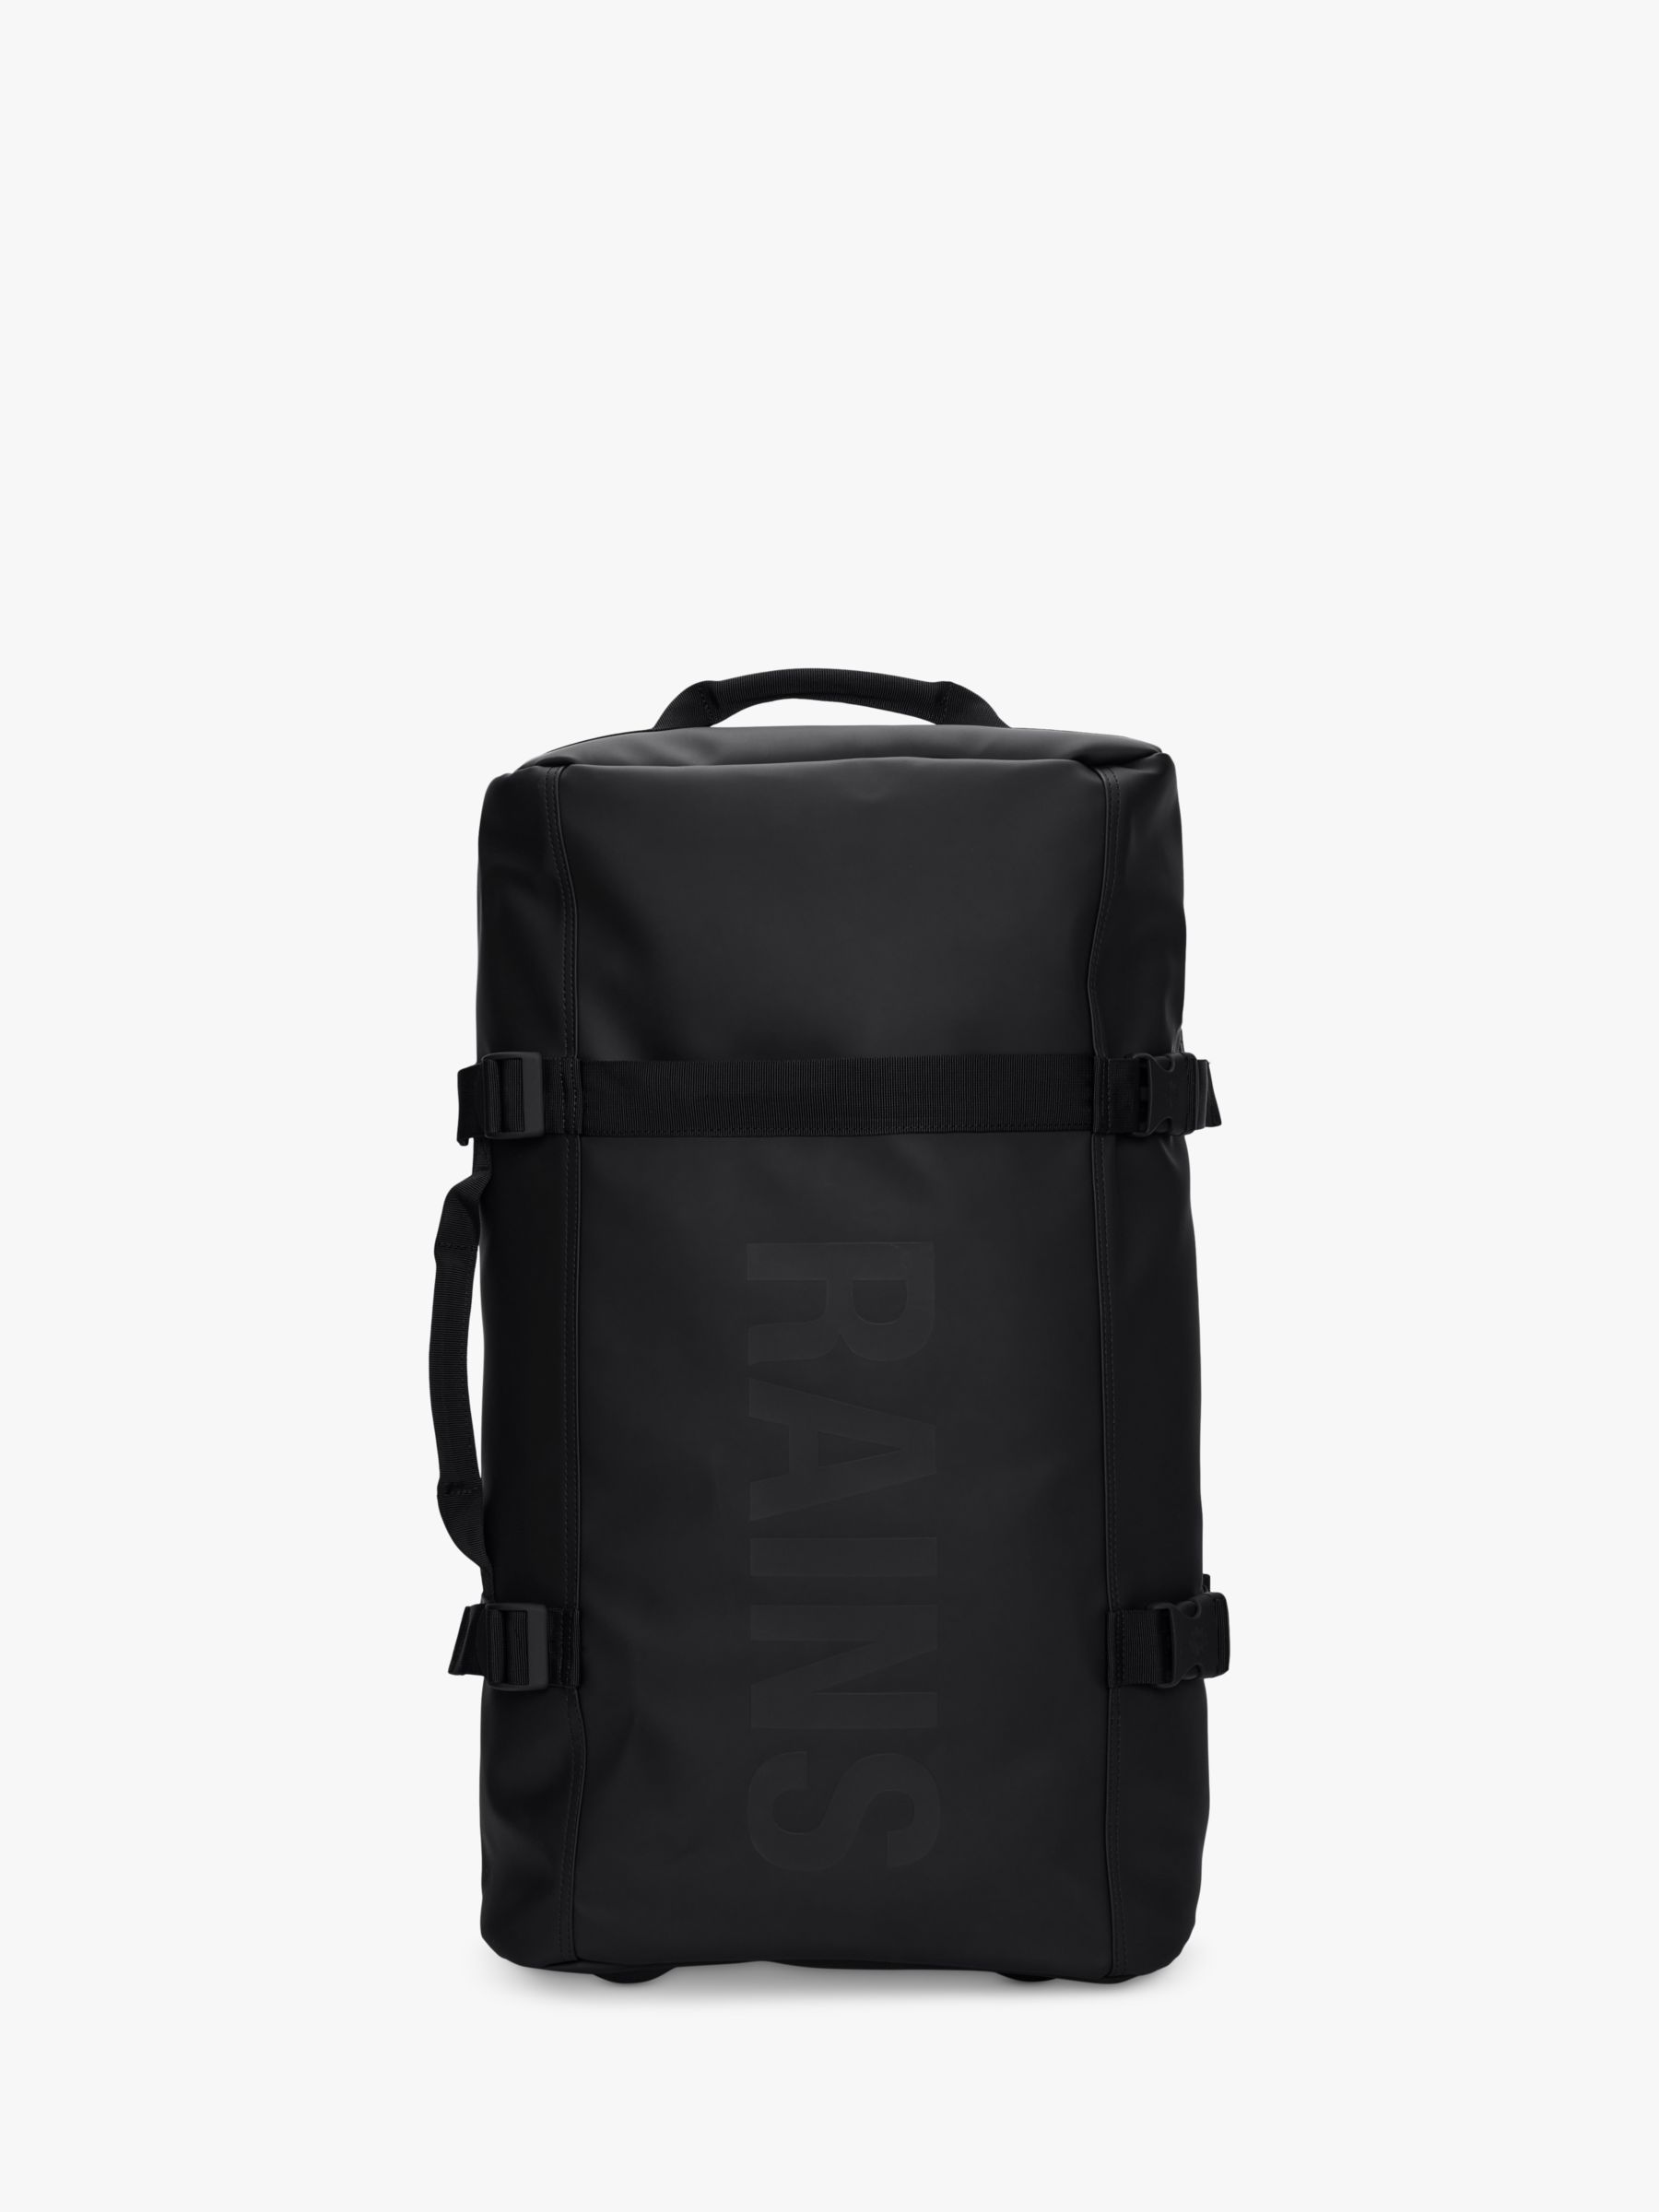 Rains Texel 64cm 2 Wheel Waterproof Medium Suitcase, Black